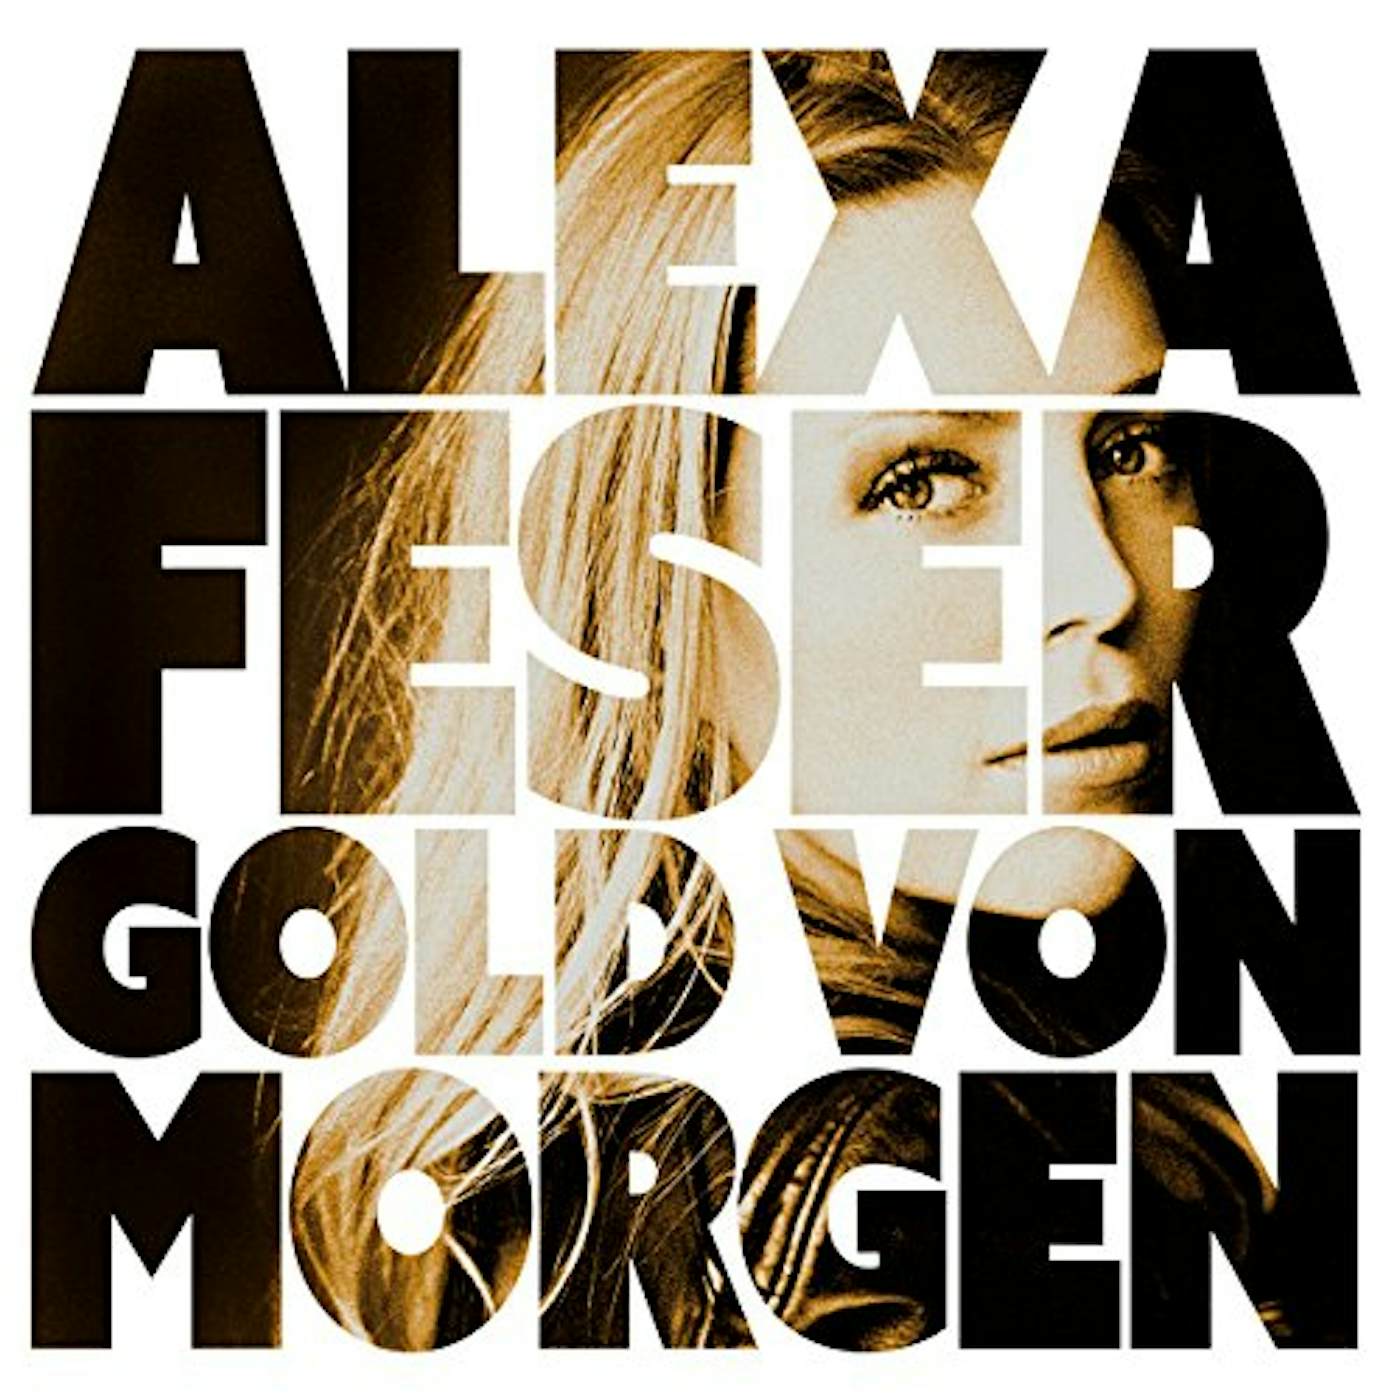 Alexa Feser GOLD VON MORGEN CD